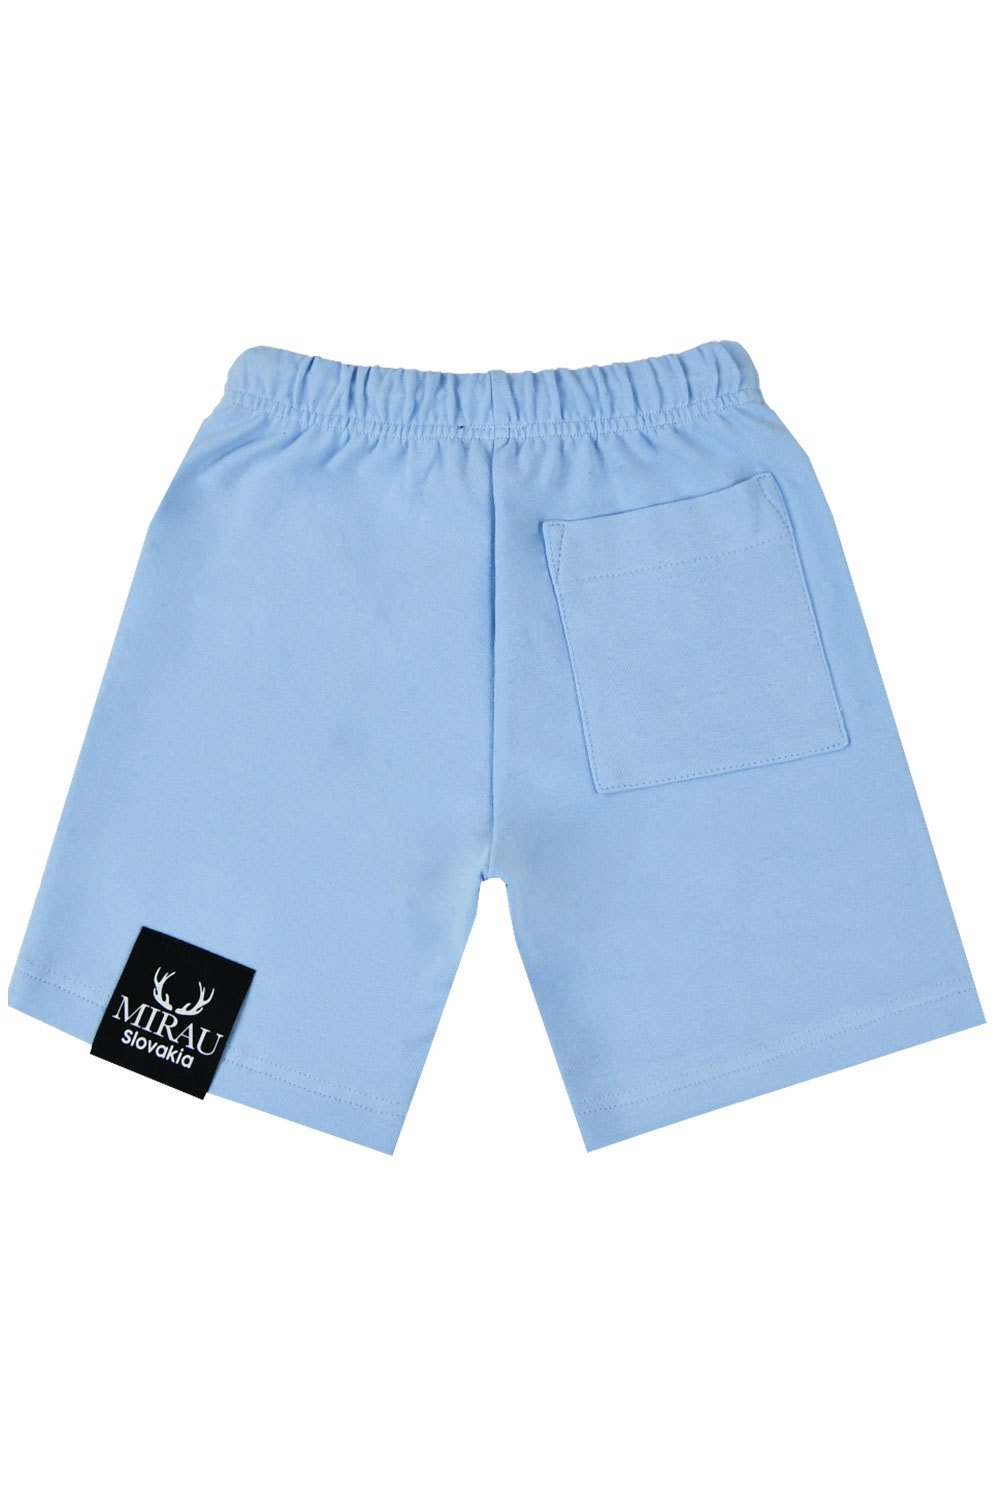 Chlapecké krátké kalhoty - Mirau Brand